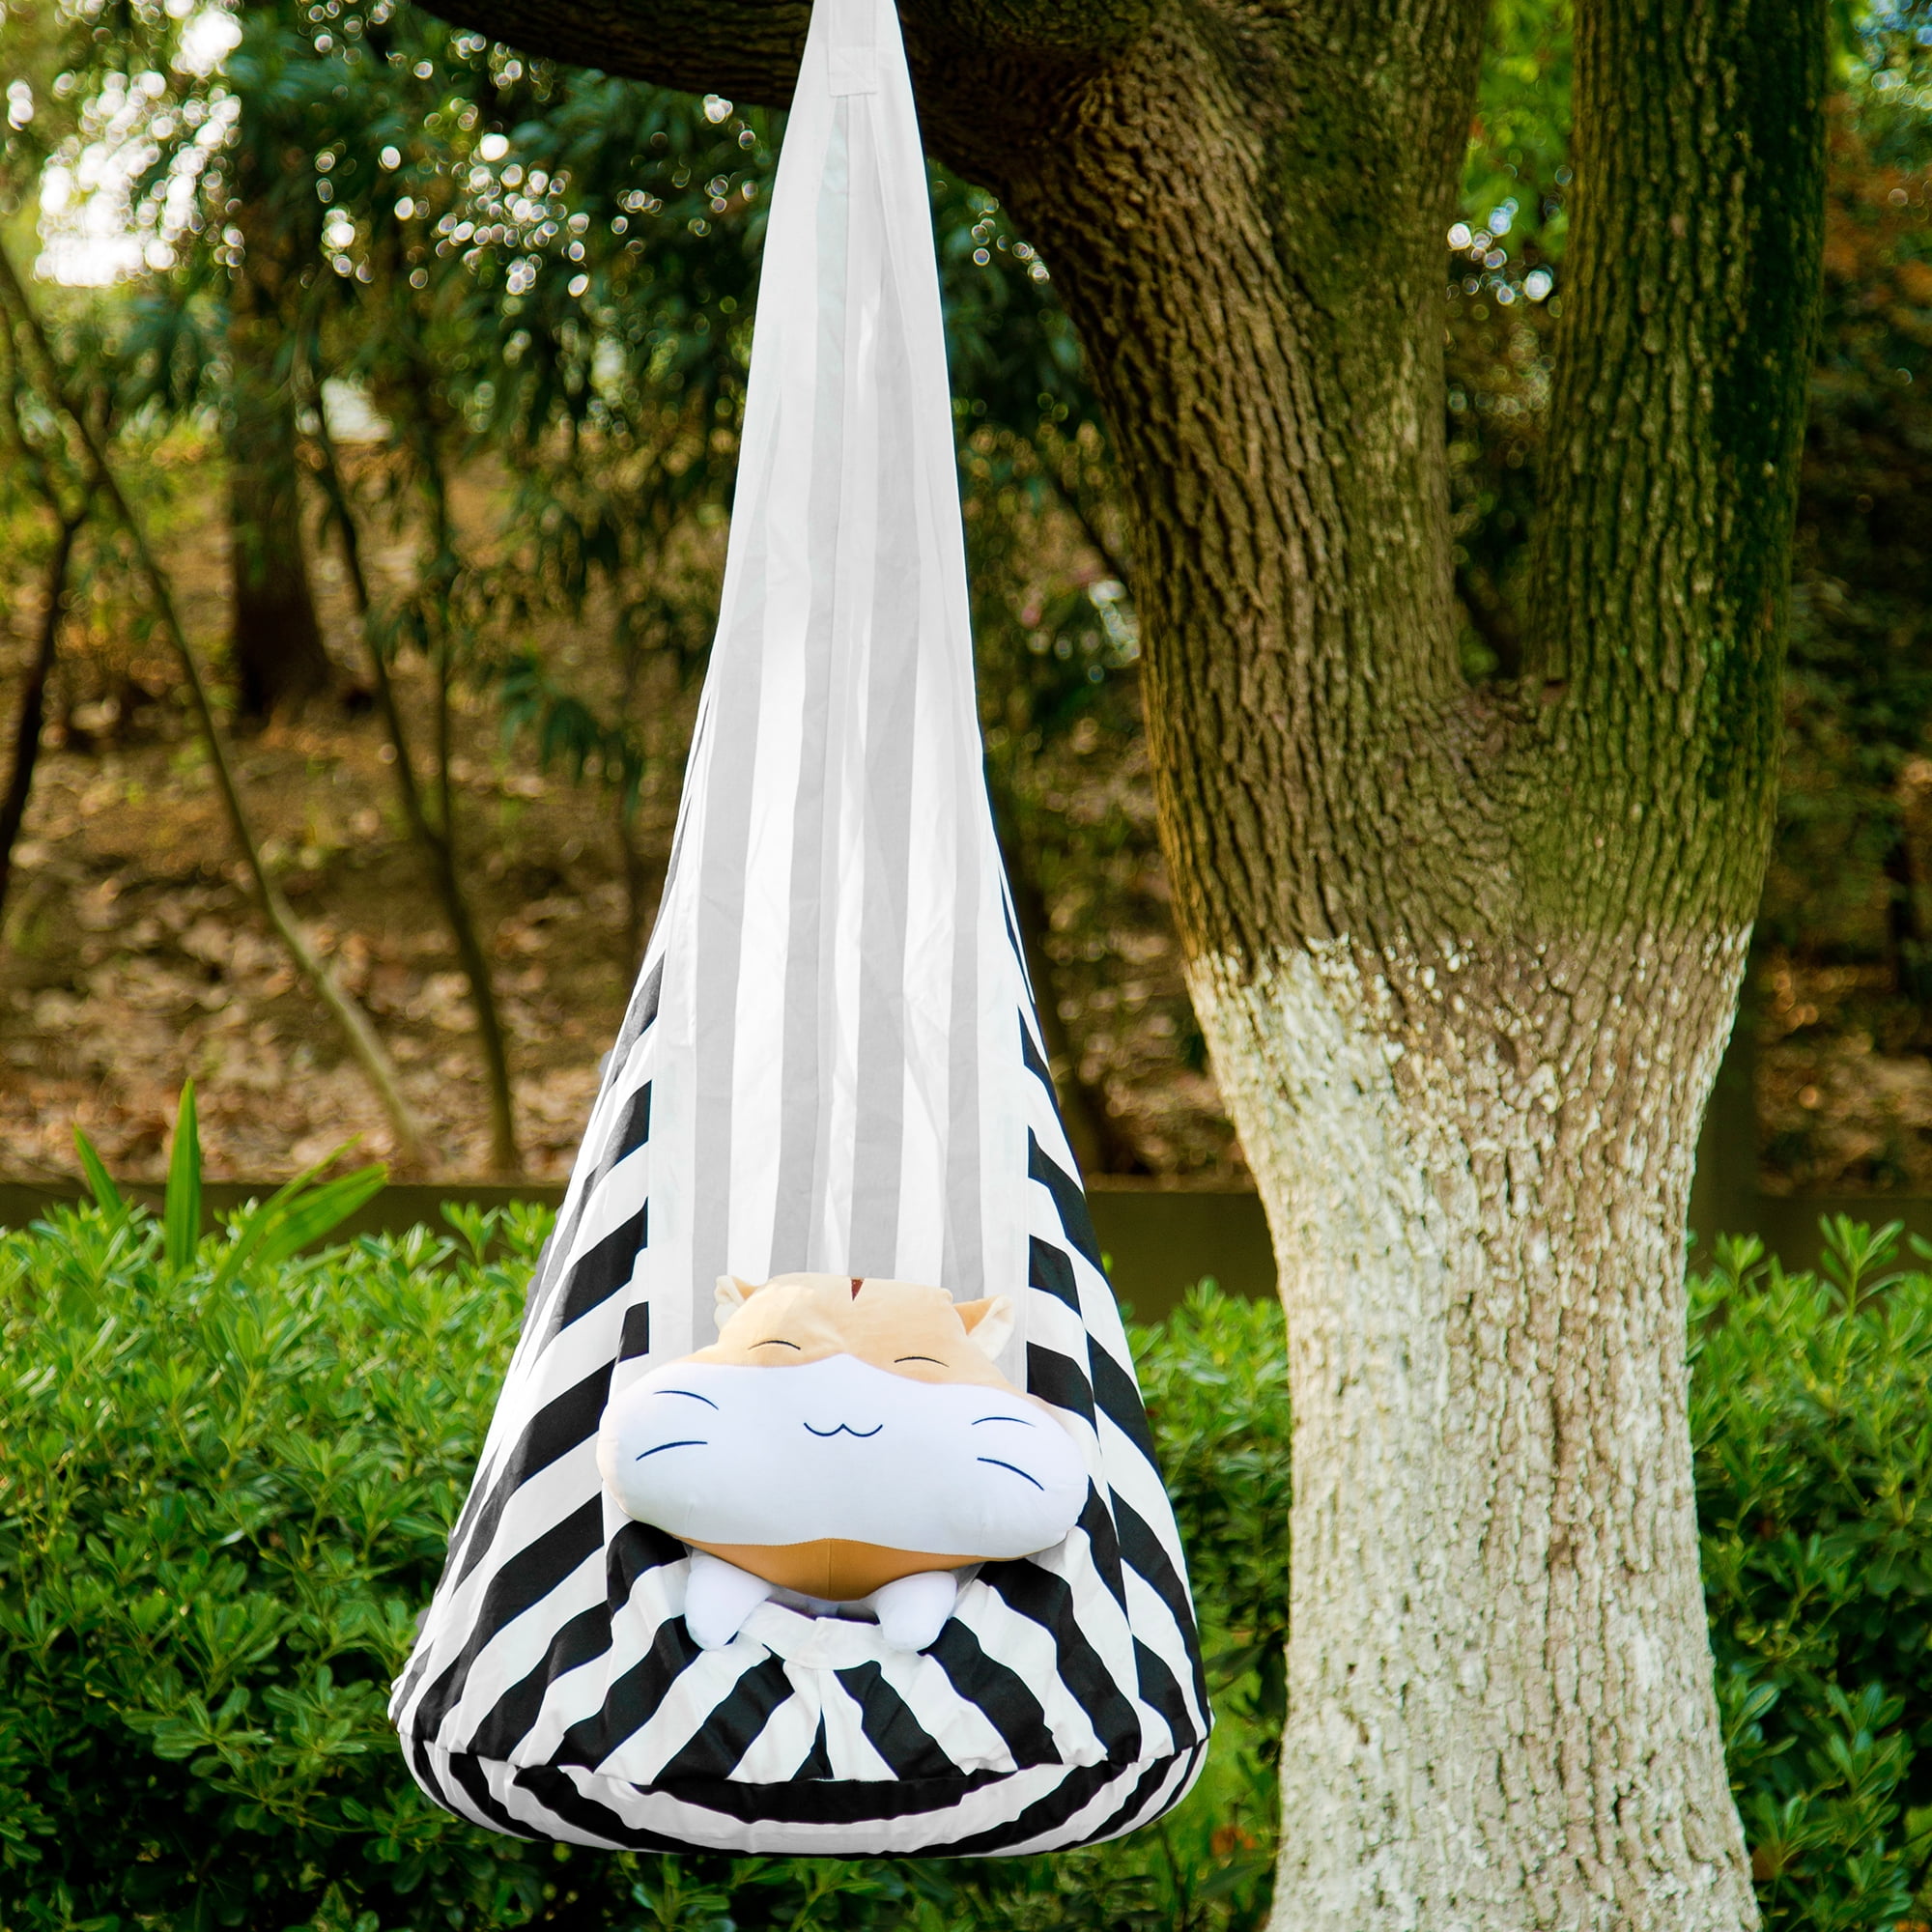 100% Cotton Hanging Seat Hammock Nest for Indoor Outdoor Bedroom Garden Porch Bormart Kids Child Pod Swing Chair Nook Hammock Green 